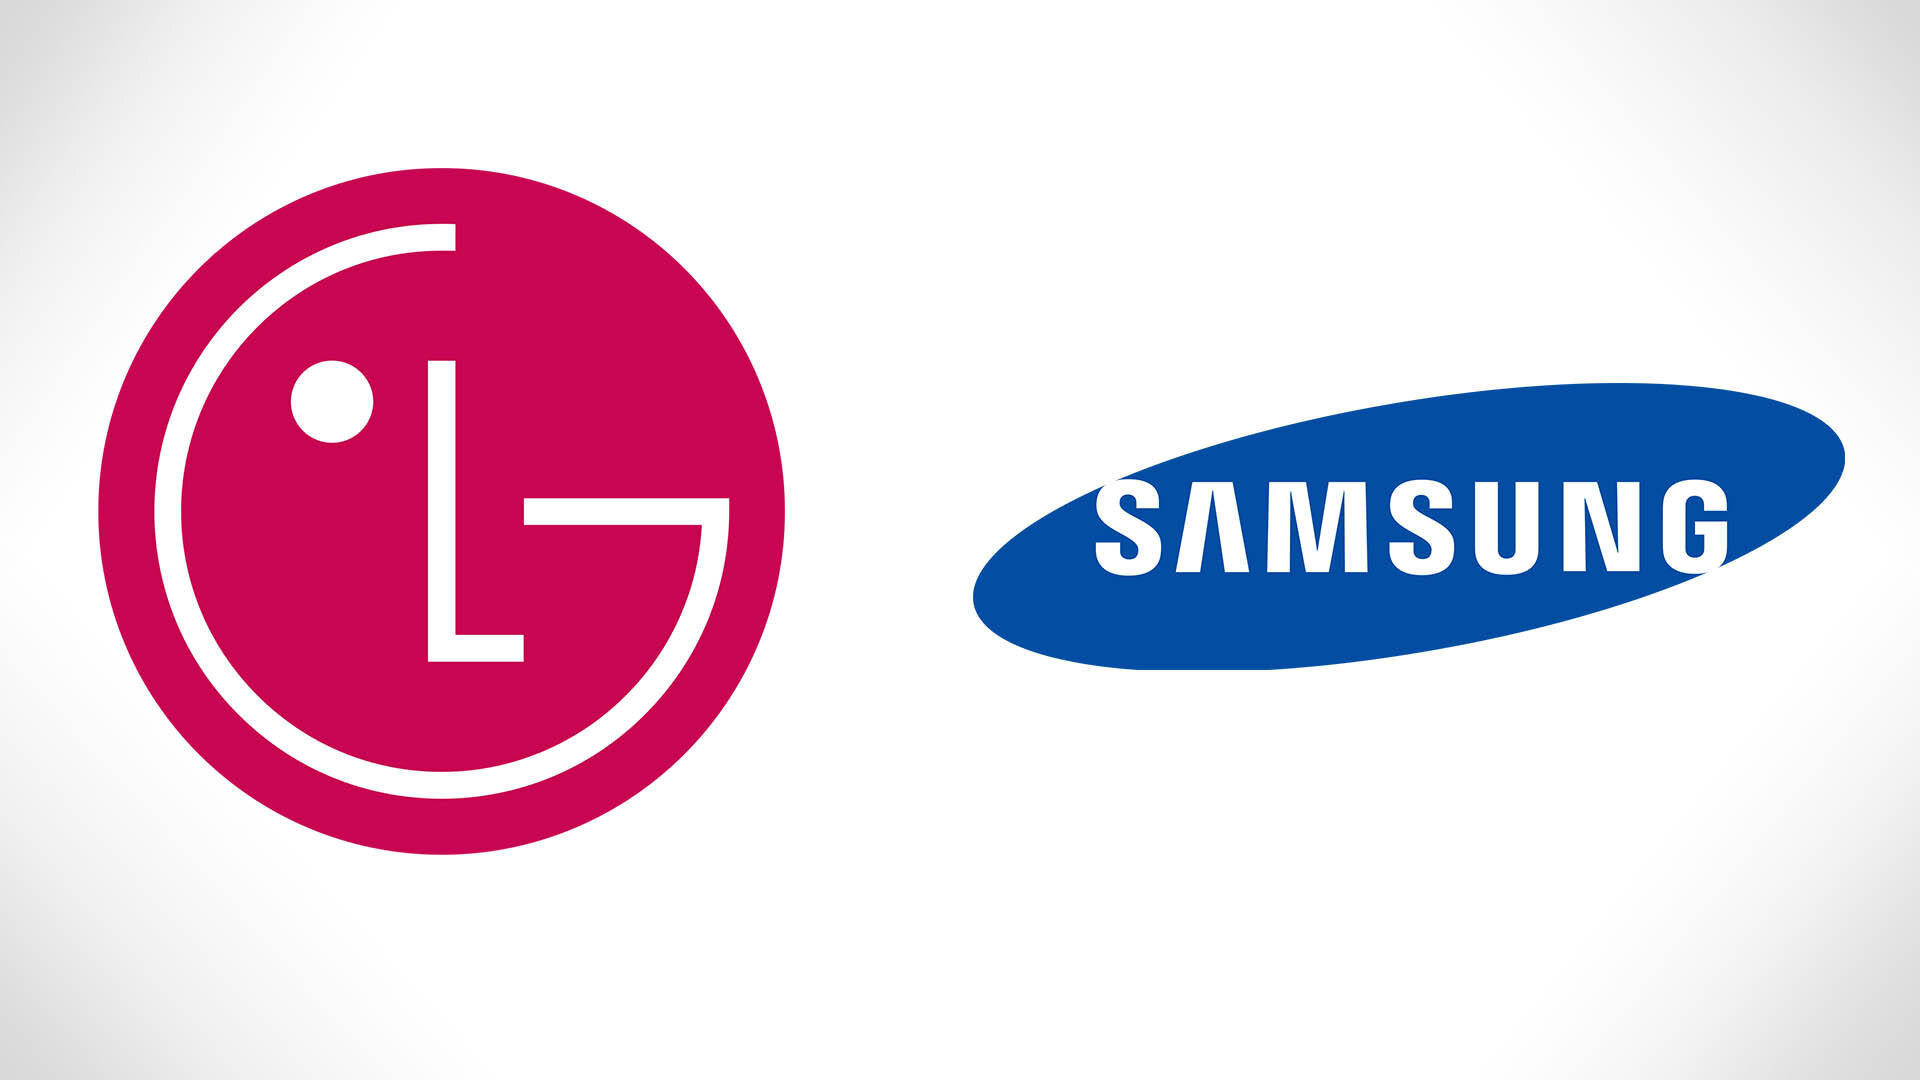 Samsung và LG là hai thương hiệu nổi tiếng đến từ Hàn Quốc